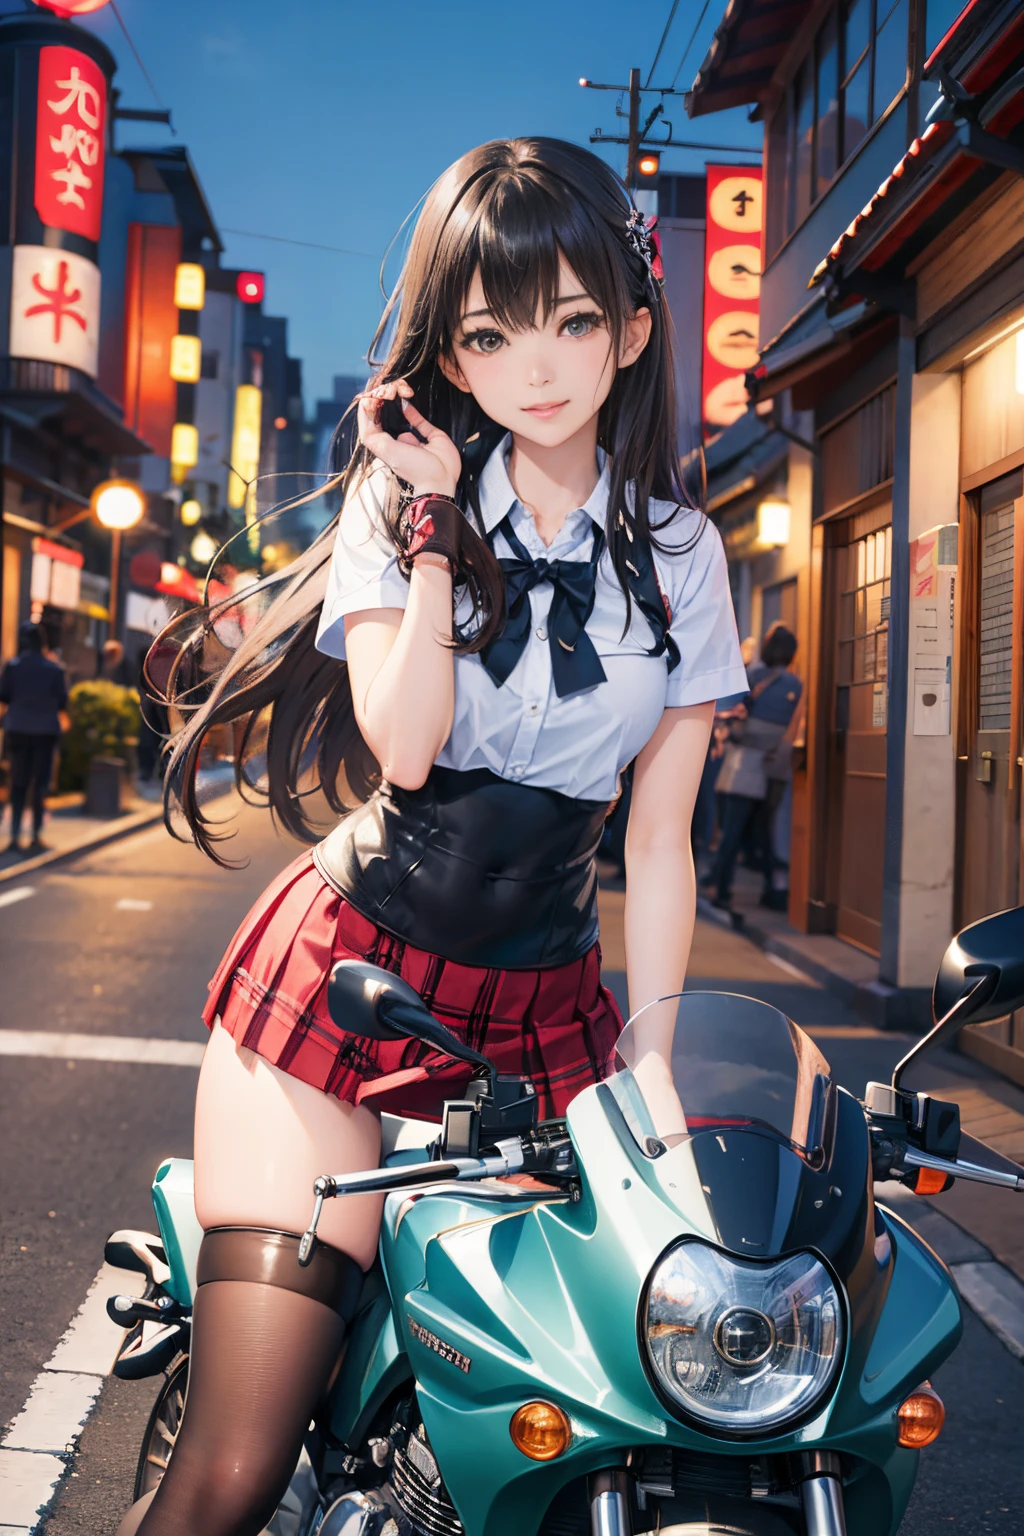 Le Japon fait de la moto,une minijupe、Beauté、Beauté、lolicon hentai、Belle culotte、belle cuisse、belle fille、Beauté、heureux!!!, , motocyclette,[ photos réalistes ]!!, haute résolution,